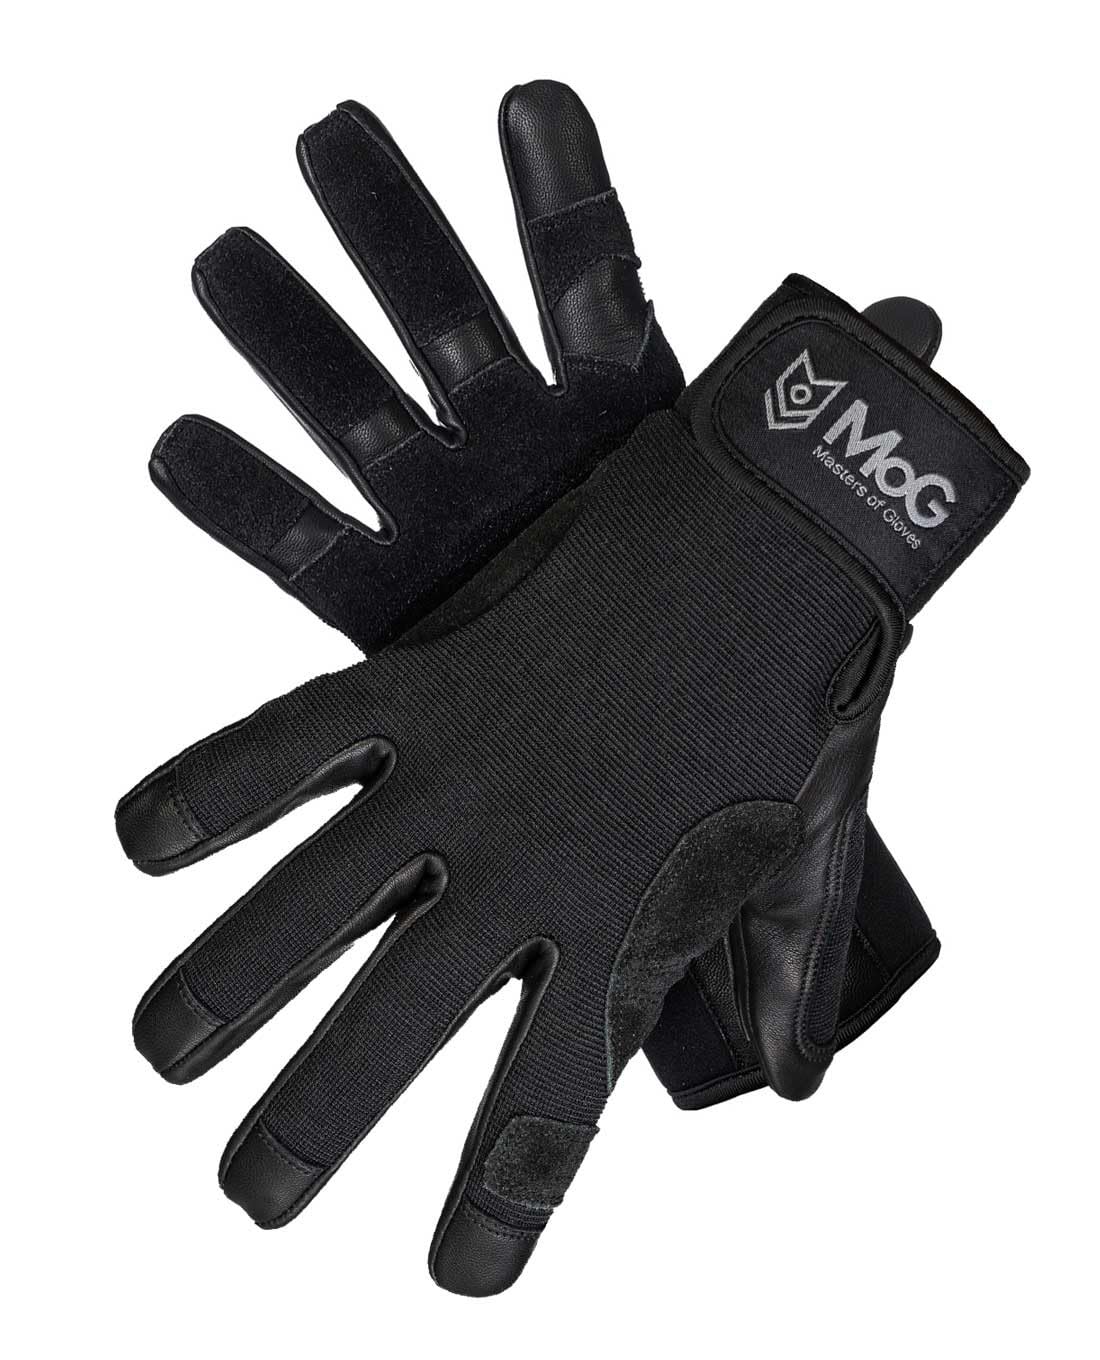 MOG Masters of Gloves Fast Rope Black 9163 professioneller Fast-Roping Abseil-Handschuh, Kletter-Handschuh, taktischer Schutz-Handschuh für Rettungsdienst, Militär, Polizei, Industriekletterer